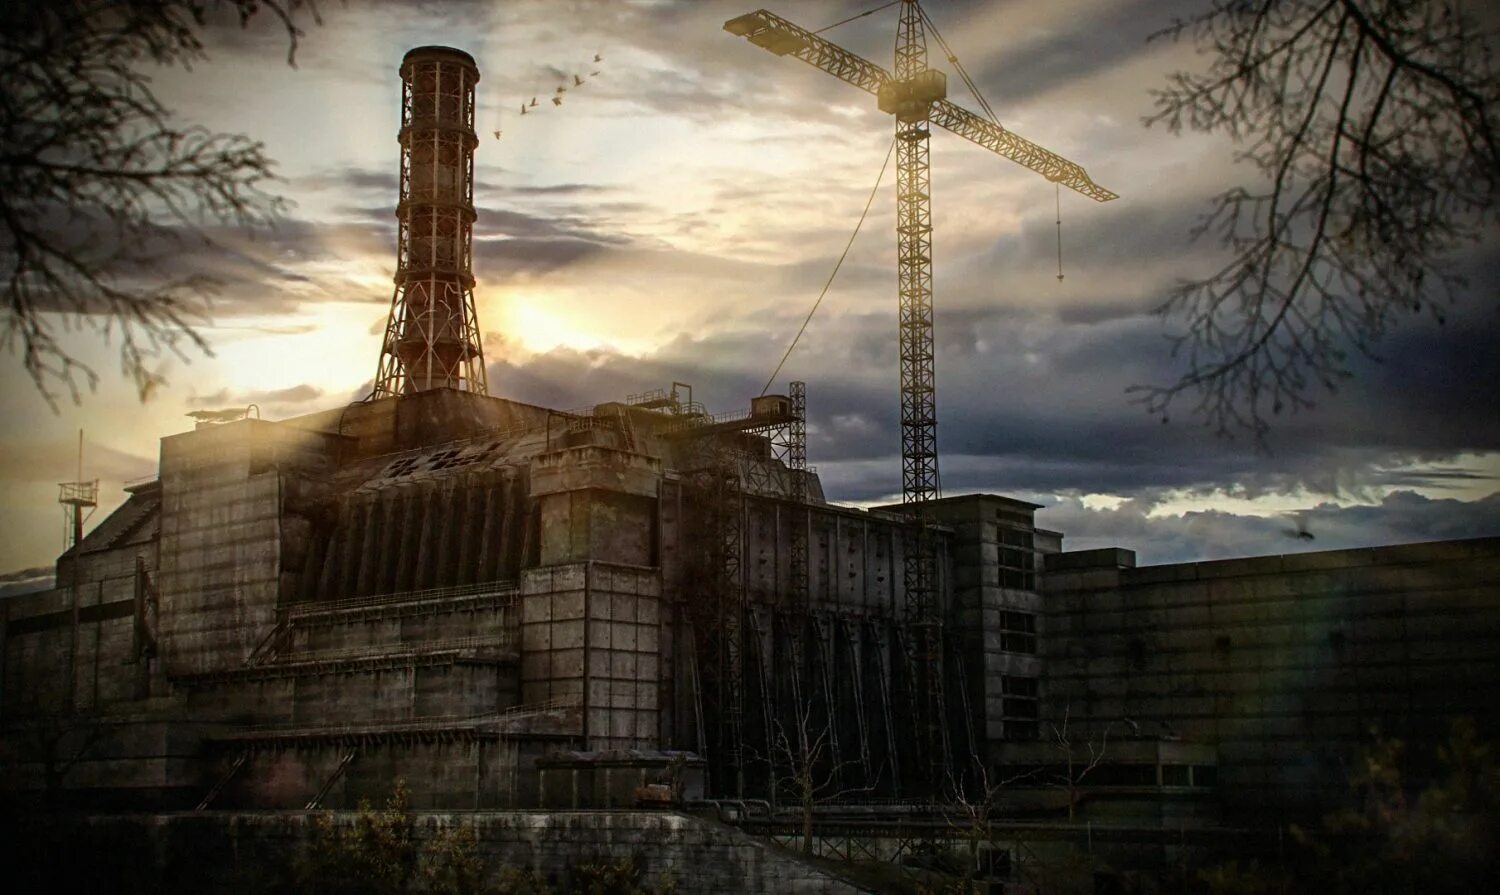 Чернобыльская АЭС сталкер фон. ЧАЭС сталкер тень Чернобыля. Сталкер зона ЧАЭС арт. Сталкер Зов Припяти ЧАЭС. Станция радиации